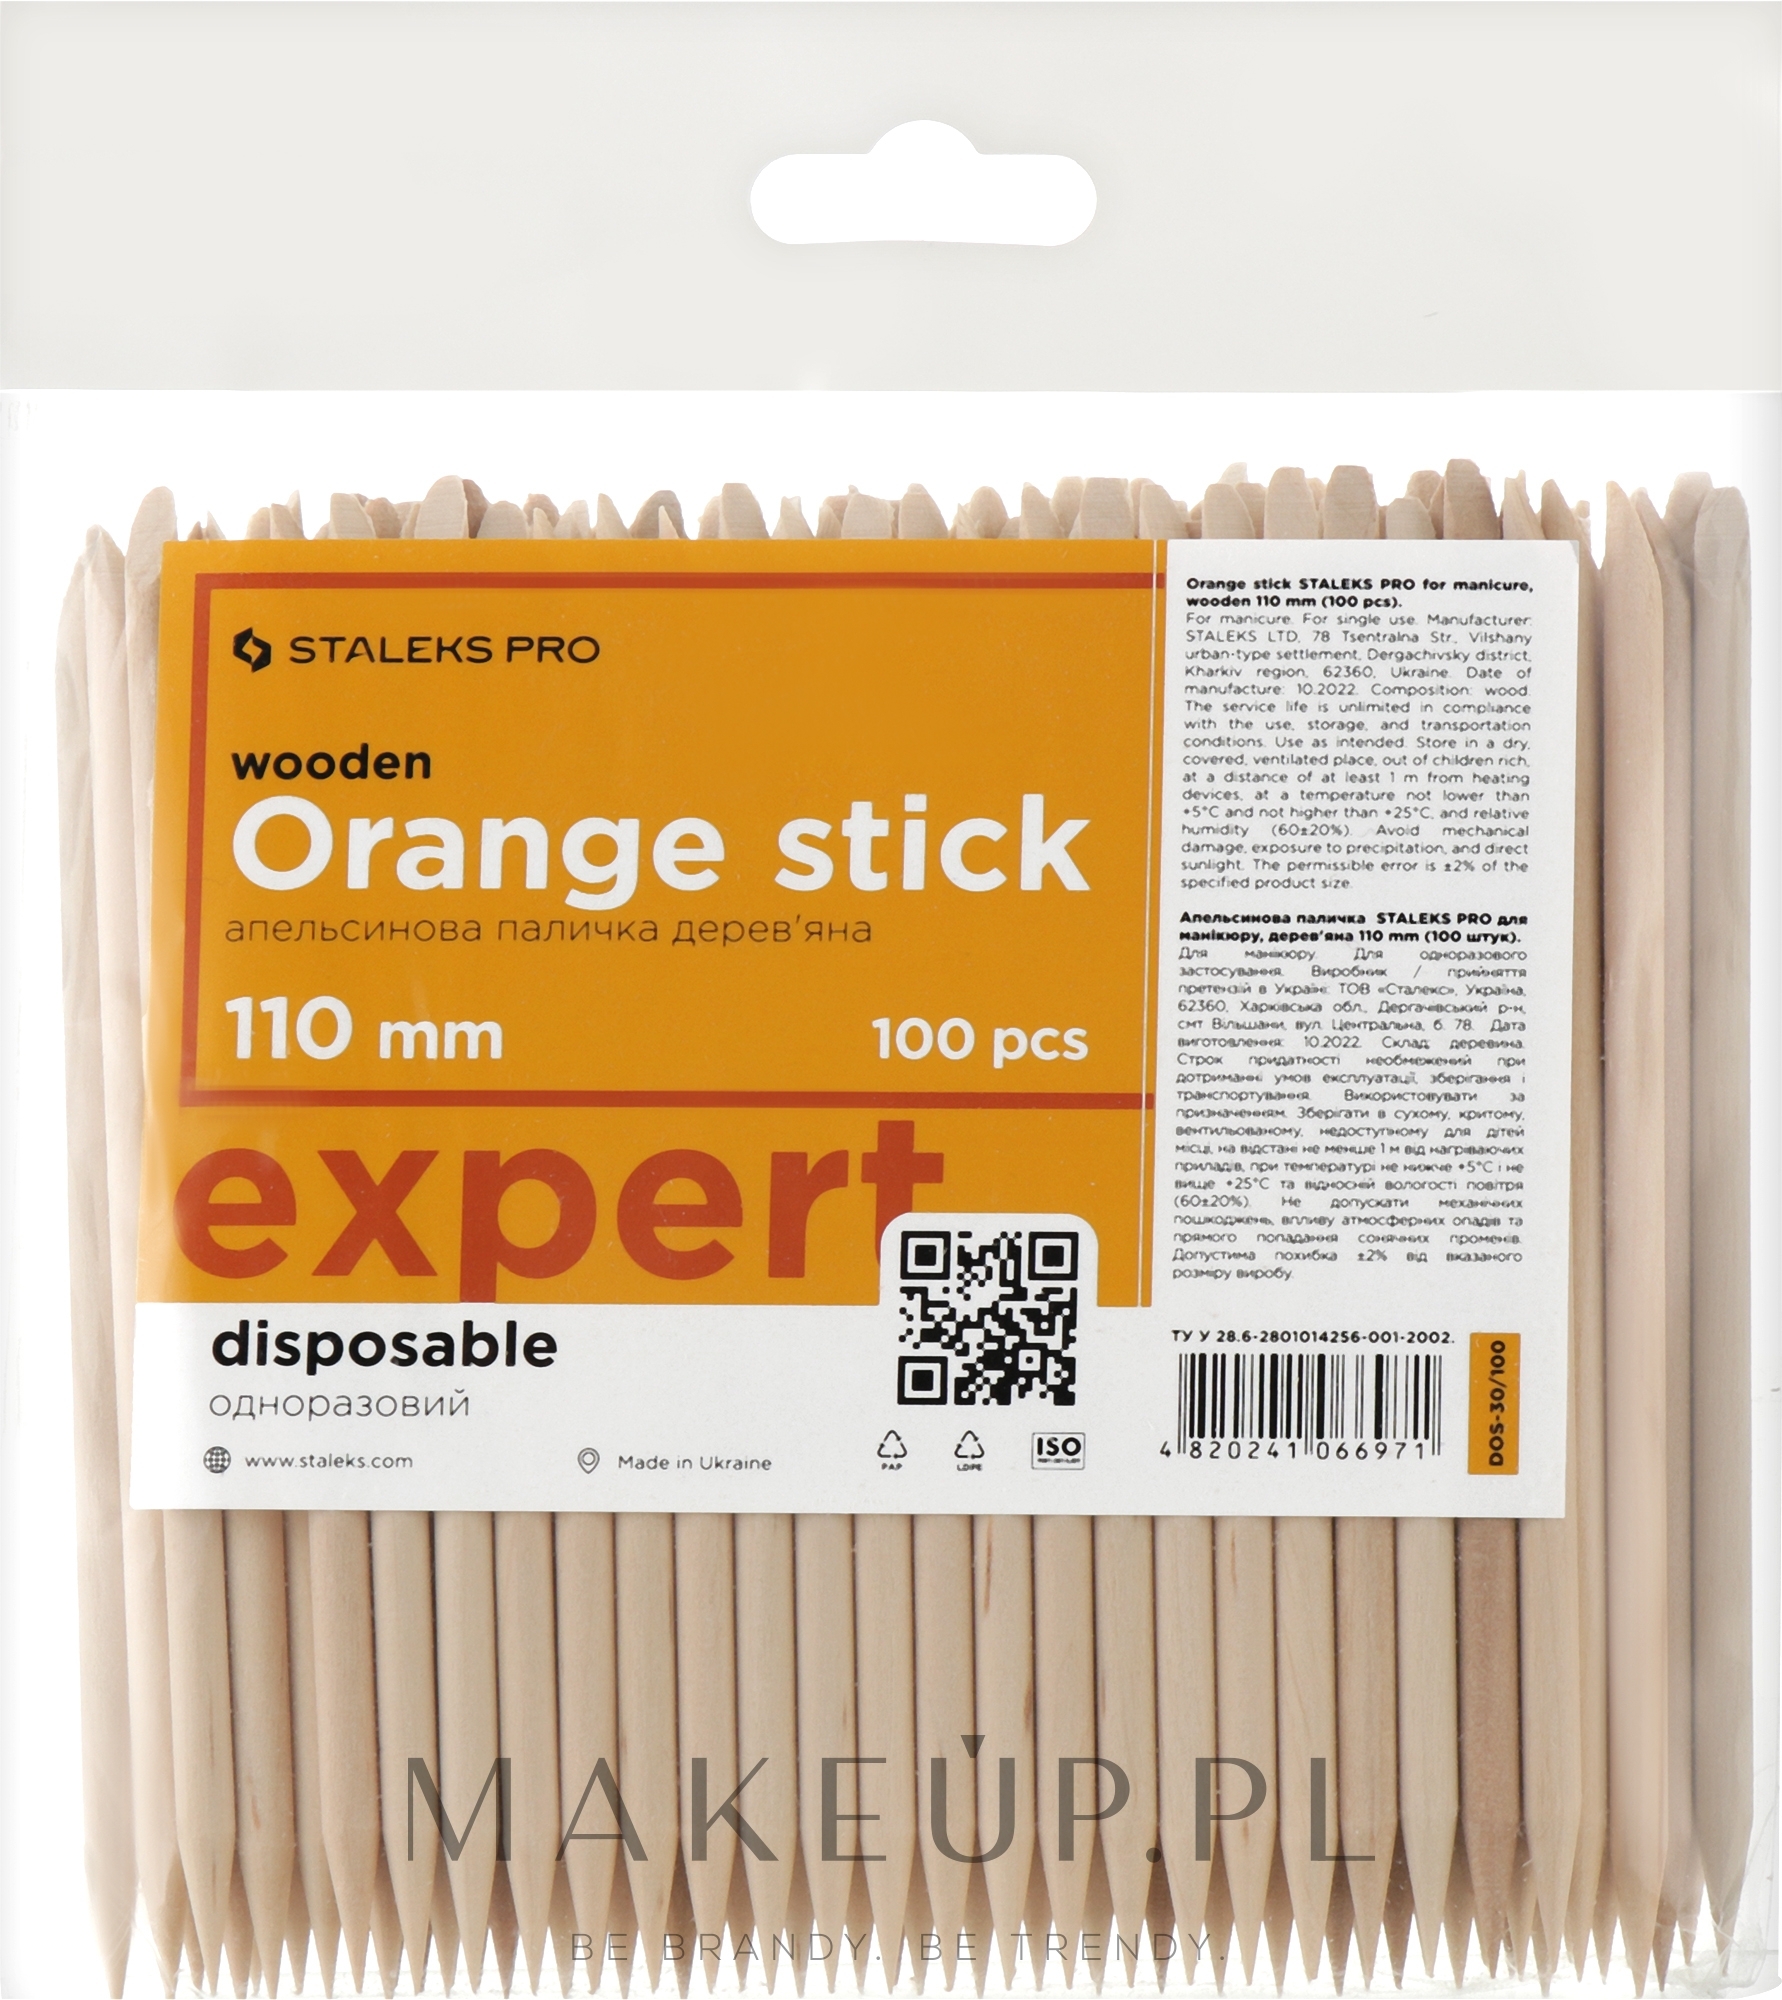 Patyczki pomarańczowe do manicure, 110 mm, 100 szt. - Staleks Pro Expert Wooden Orange Stick — Zdjęcie 100 szt.